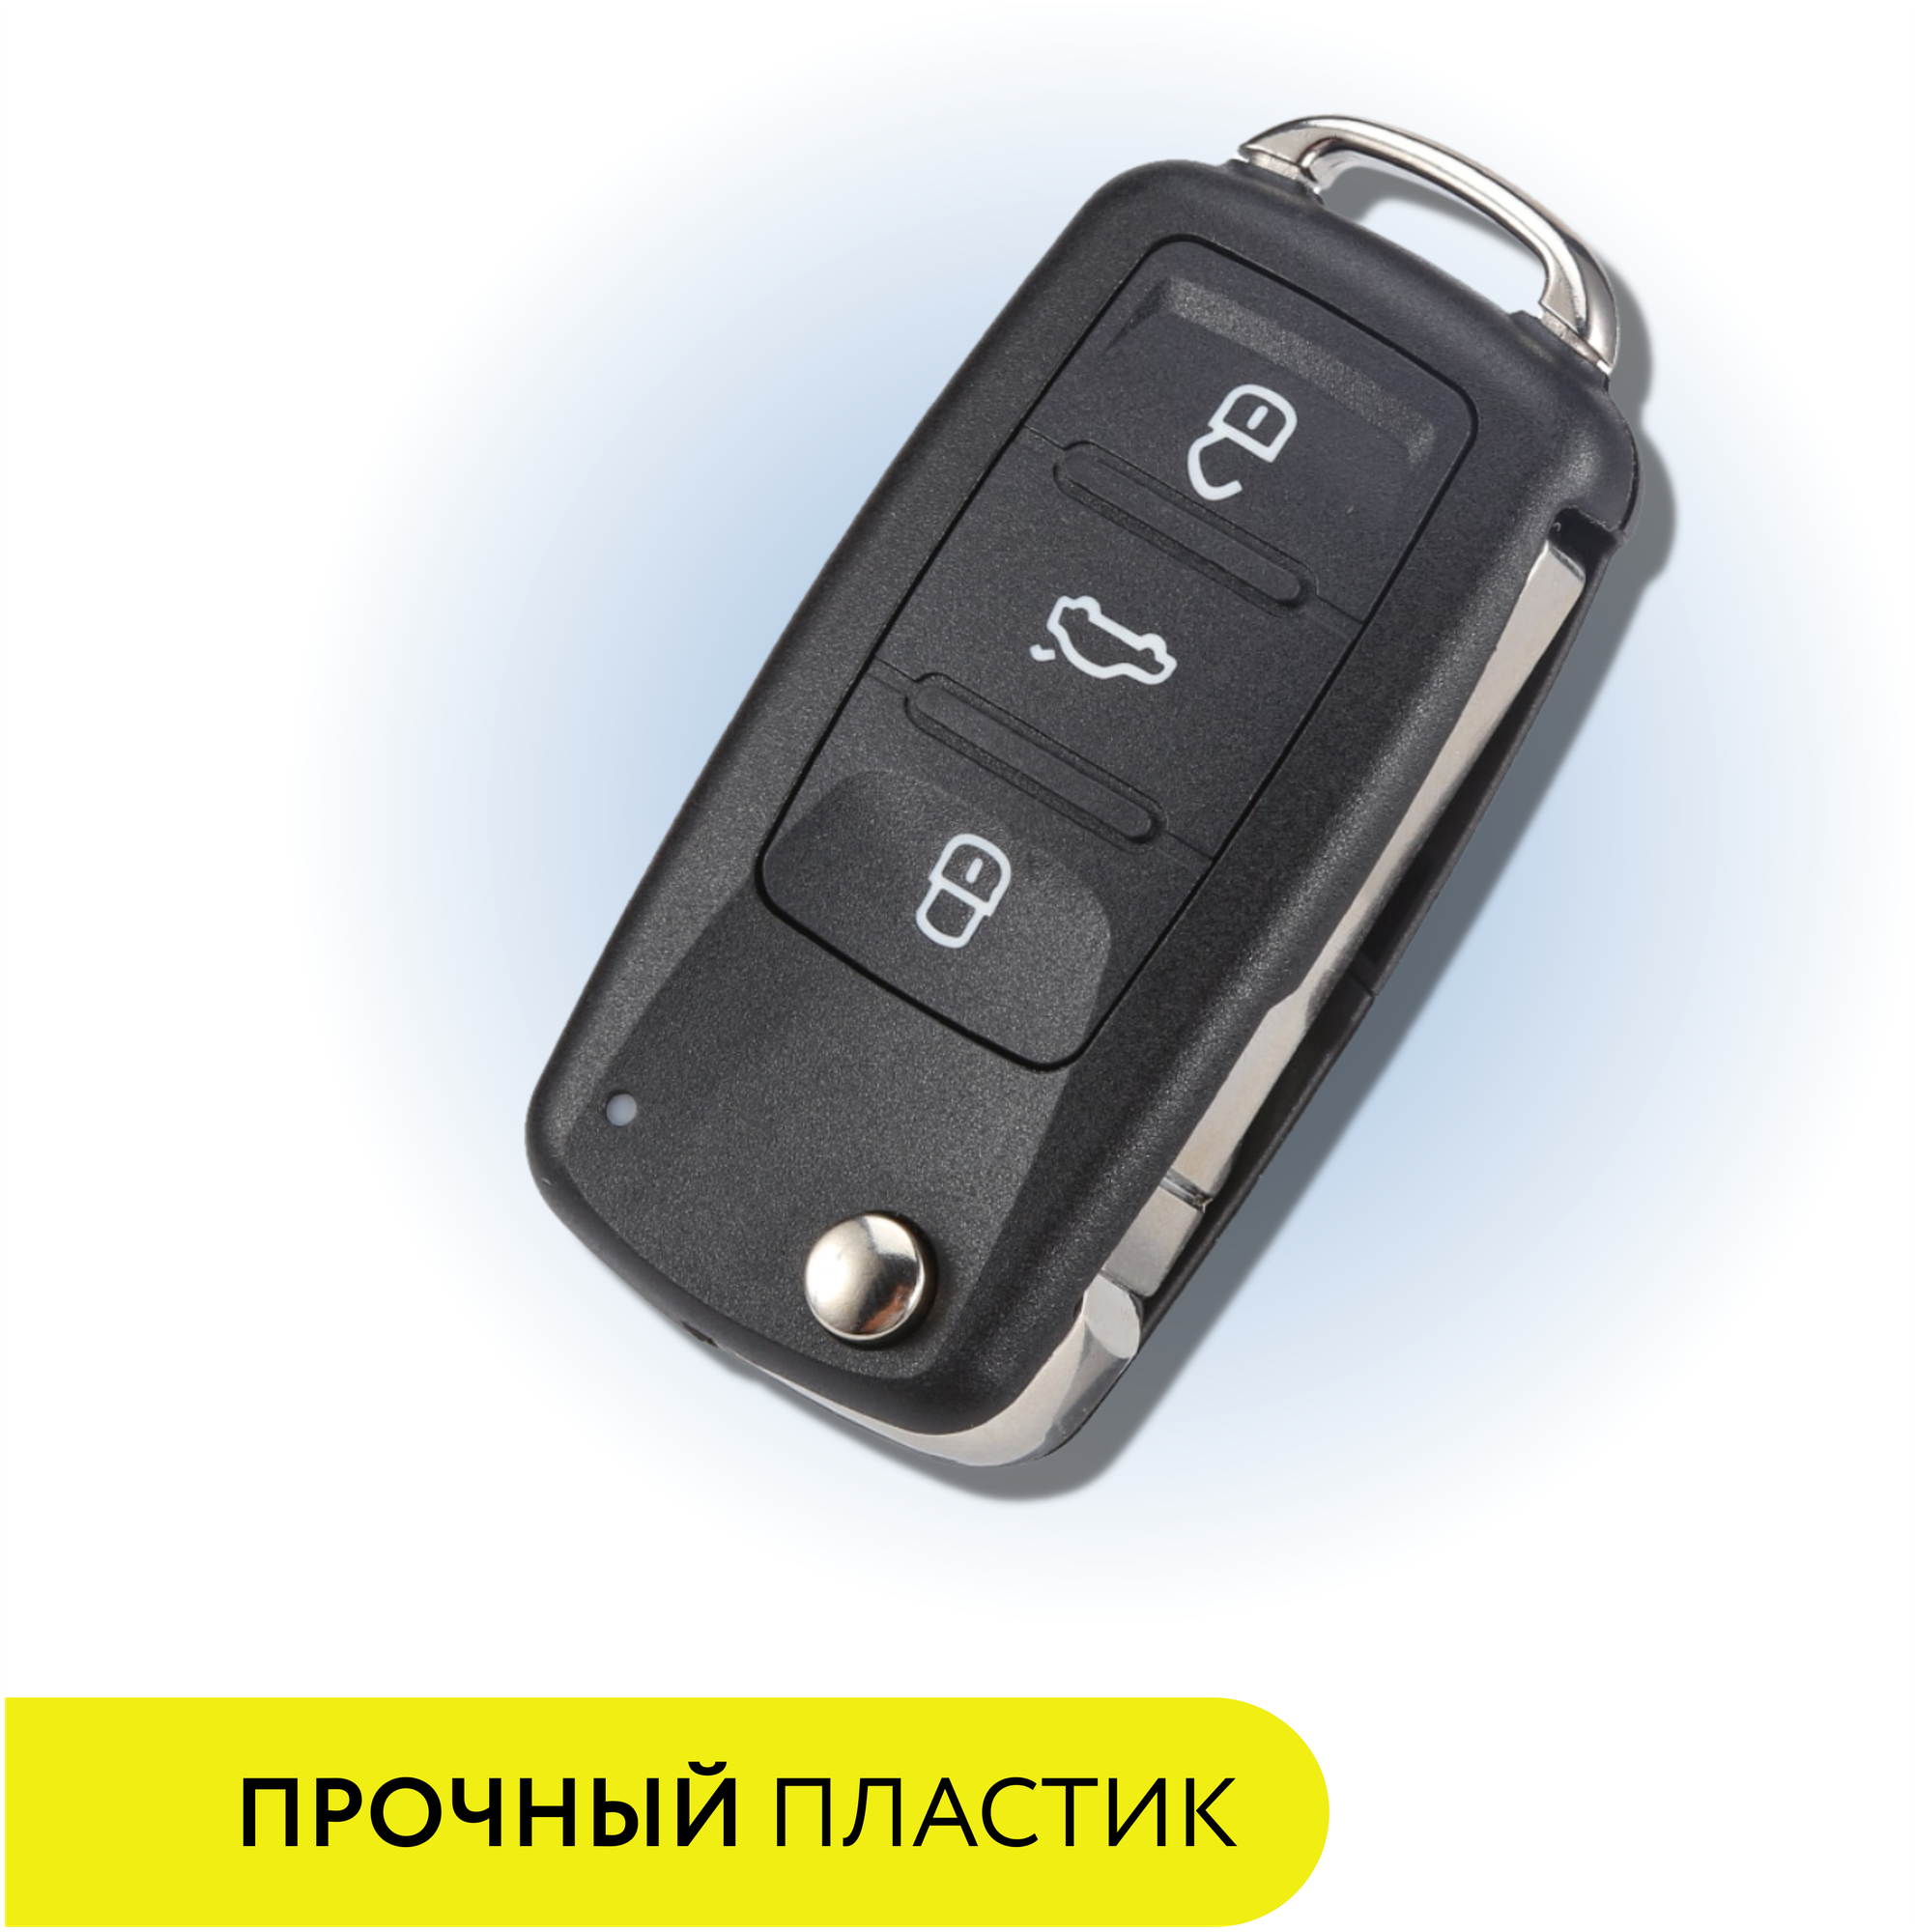 Ключ зажигания для Фольксваген Поло Транспортер T5 Кэдди Volkswagen Polo Transporter T5 Caddy 3 кнопки